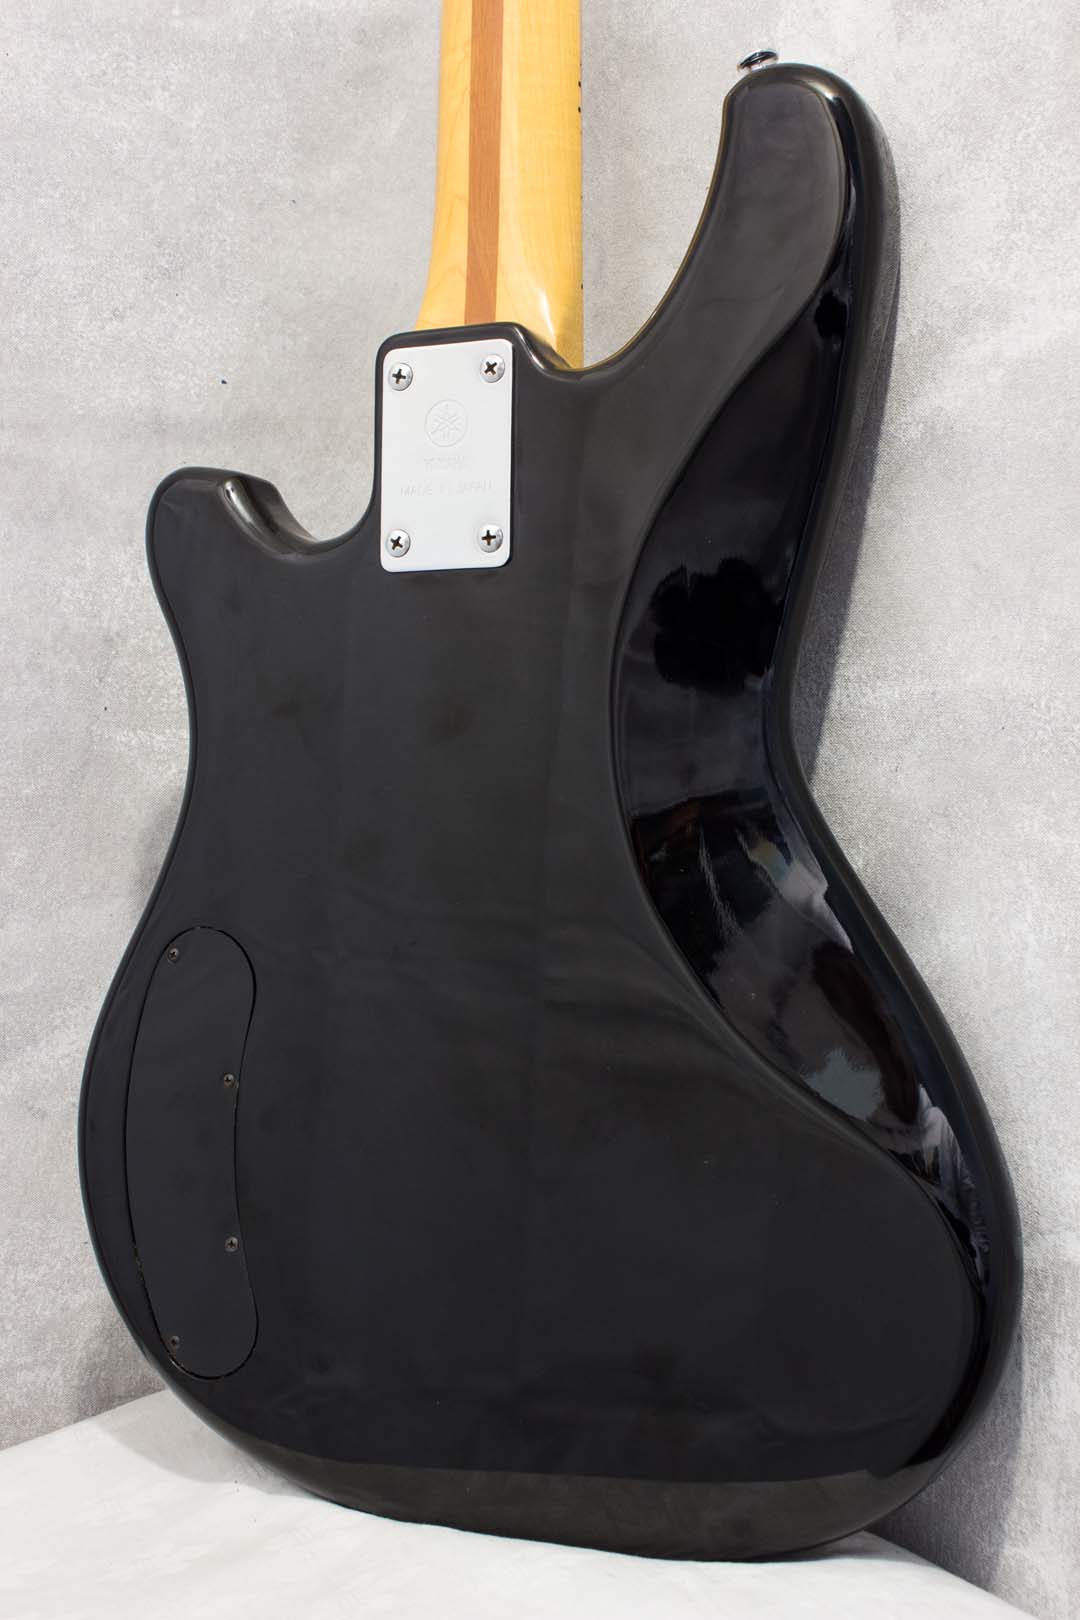 Yamaha Super Bass SB500S Black 1981